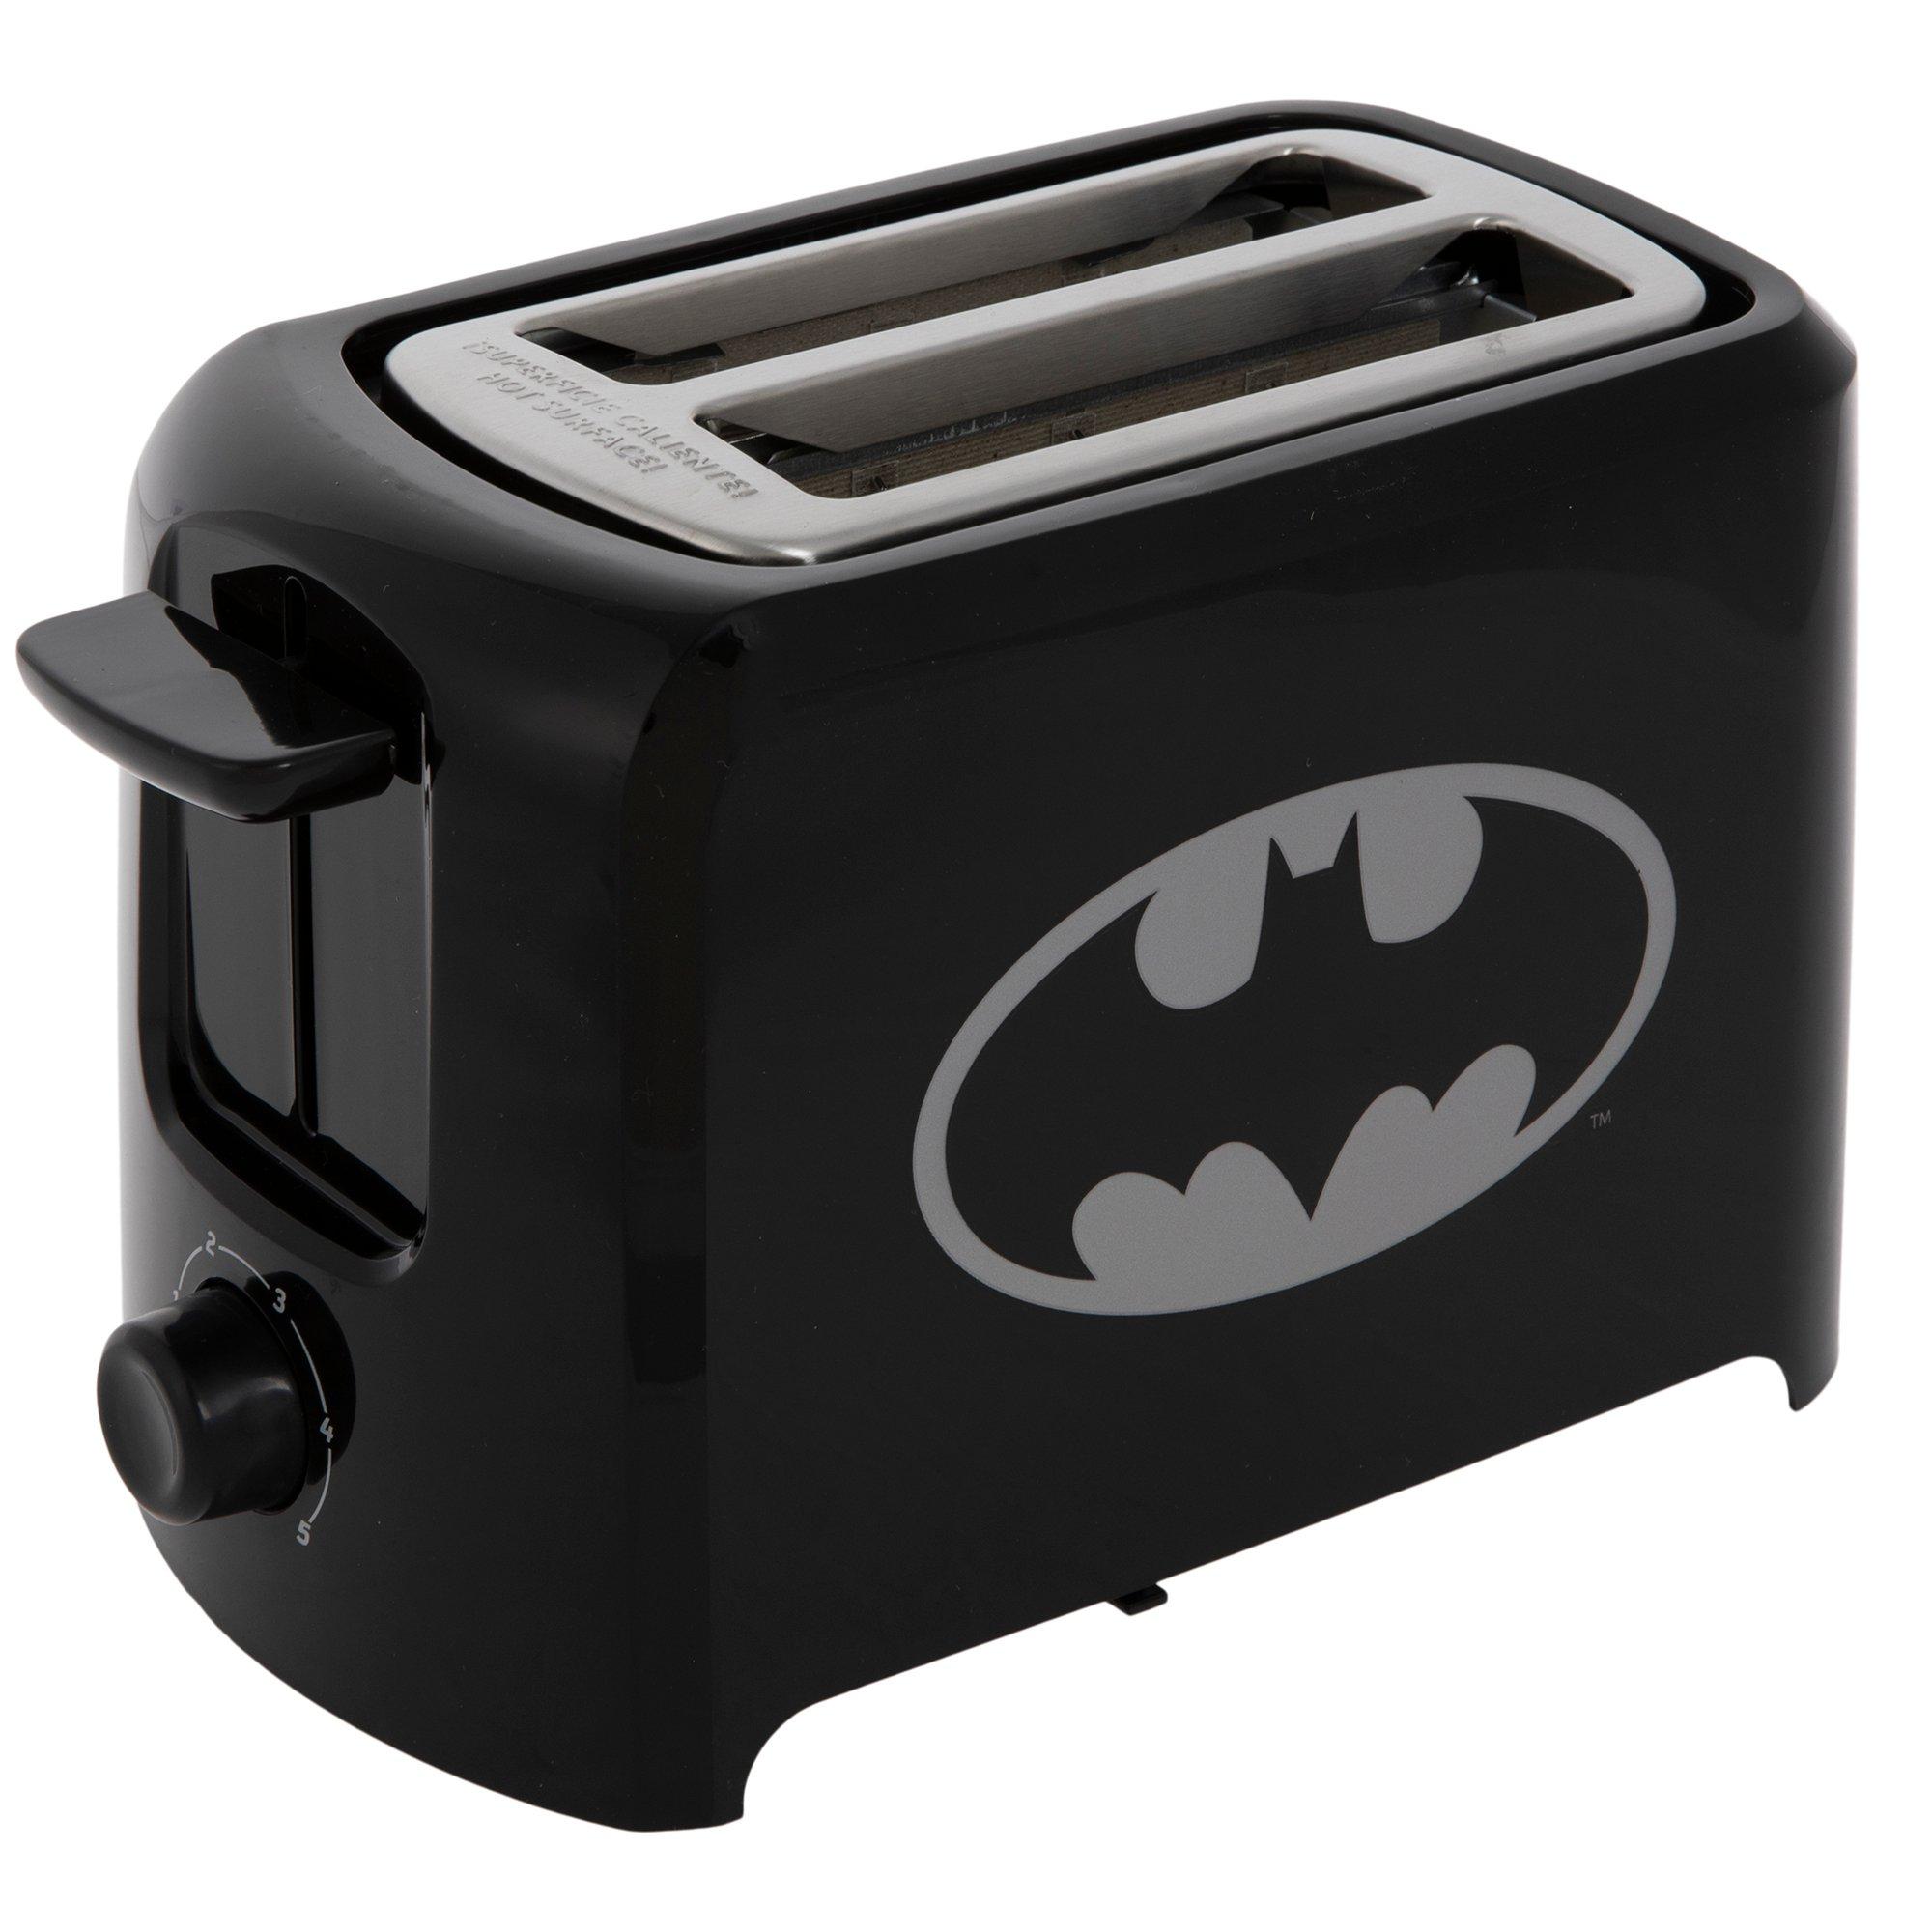 Batman Toaster, Hobby Lobby